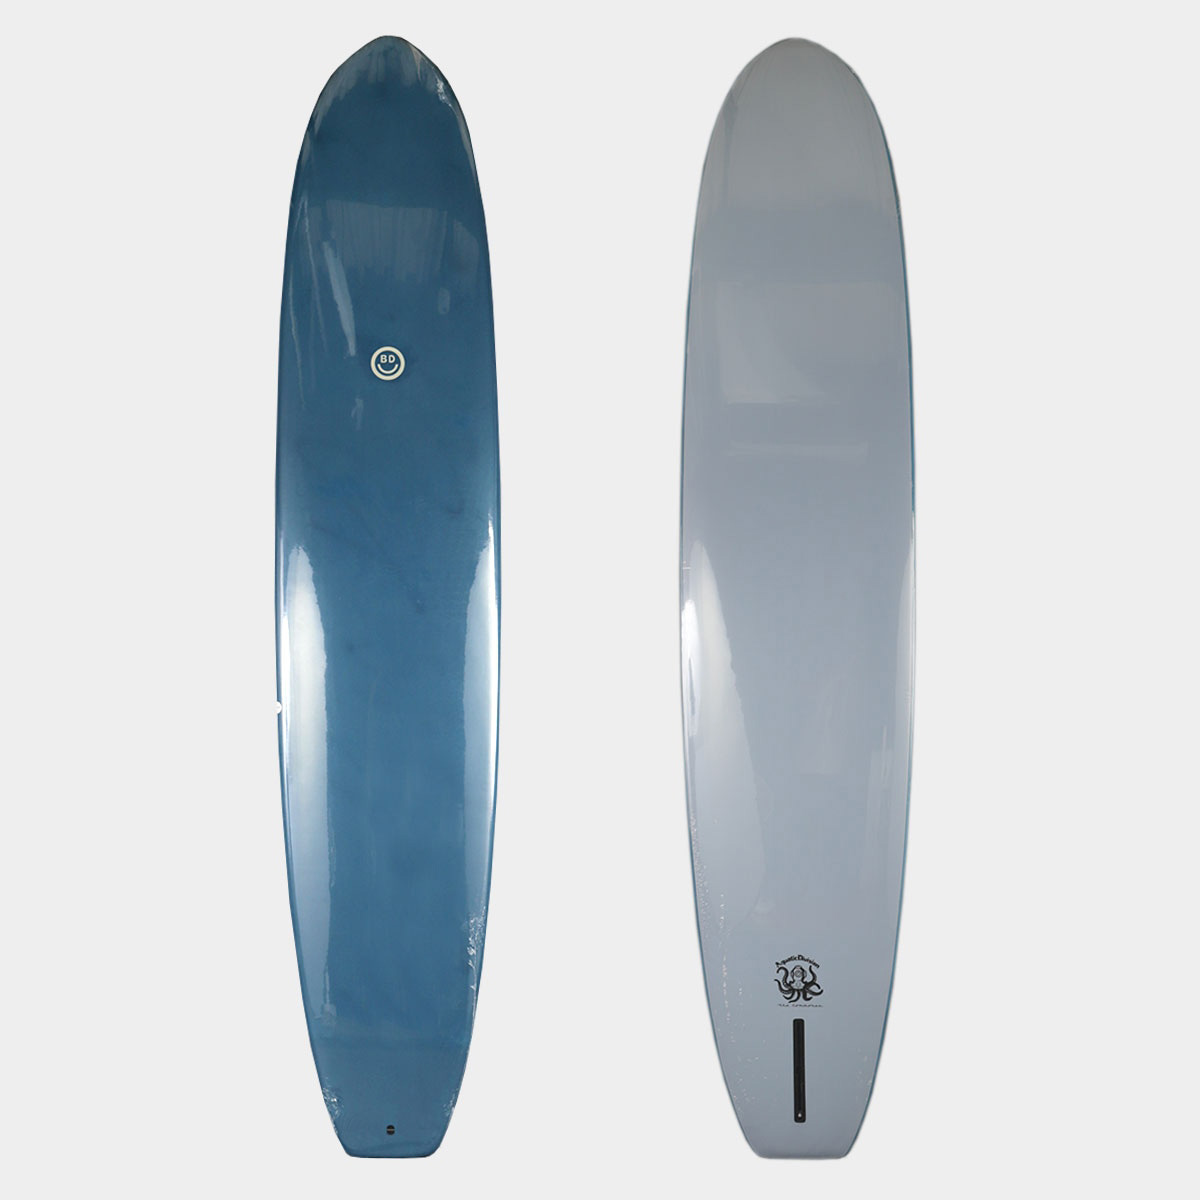 ビーチドデイズ サーフボード ソフトボード シングルフィン ブルー  正規品 BEACHED DAYS SURFBOARDS SOFTBOARDS 9'6 THE COMMONER